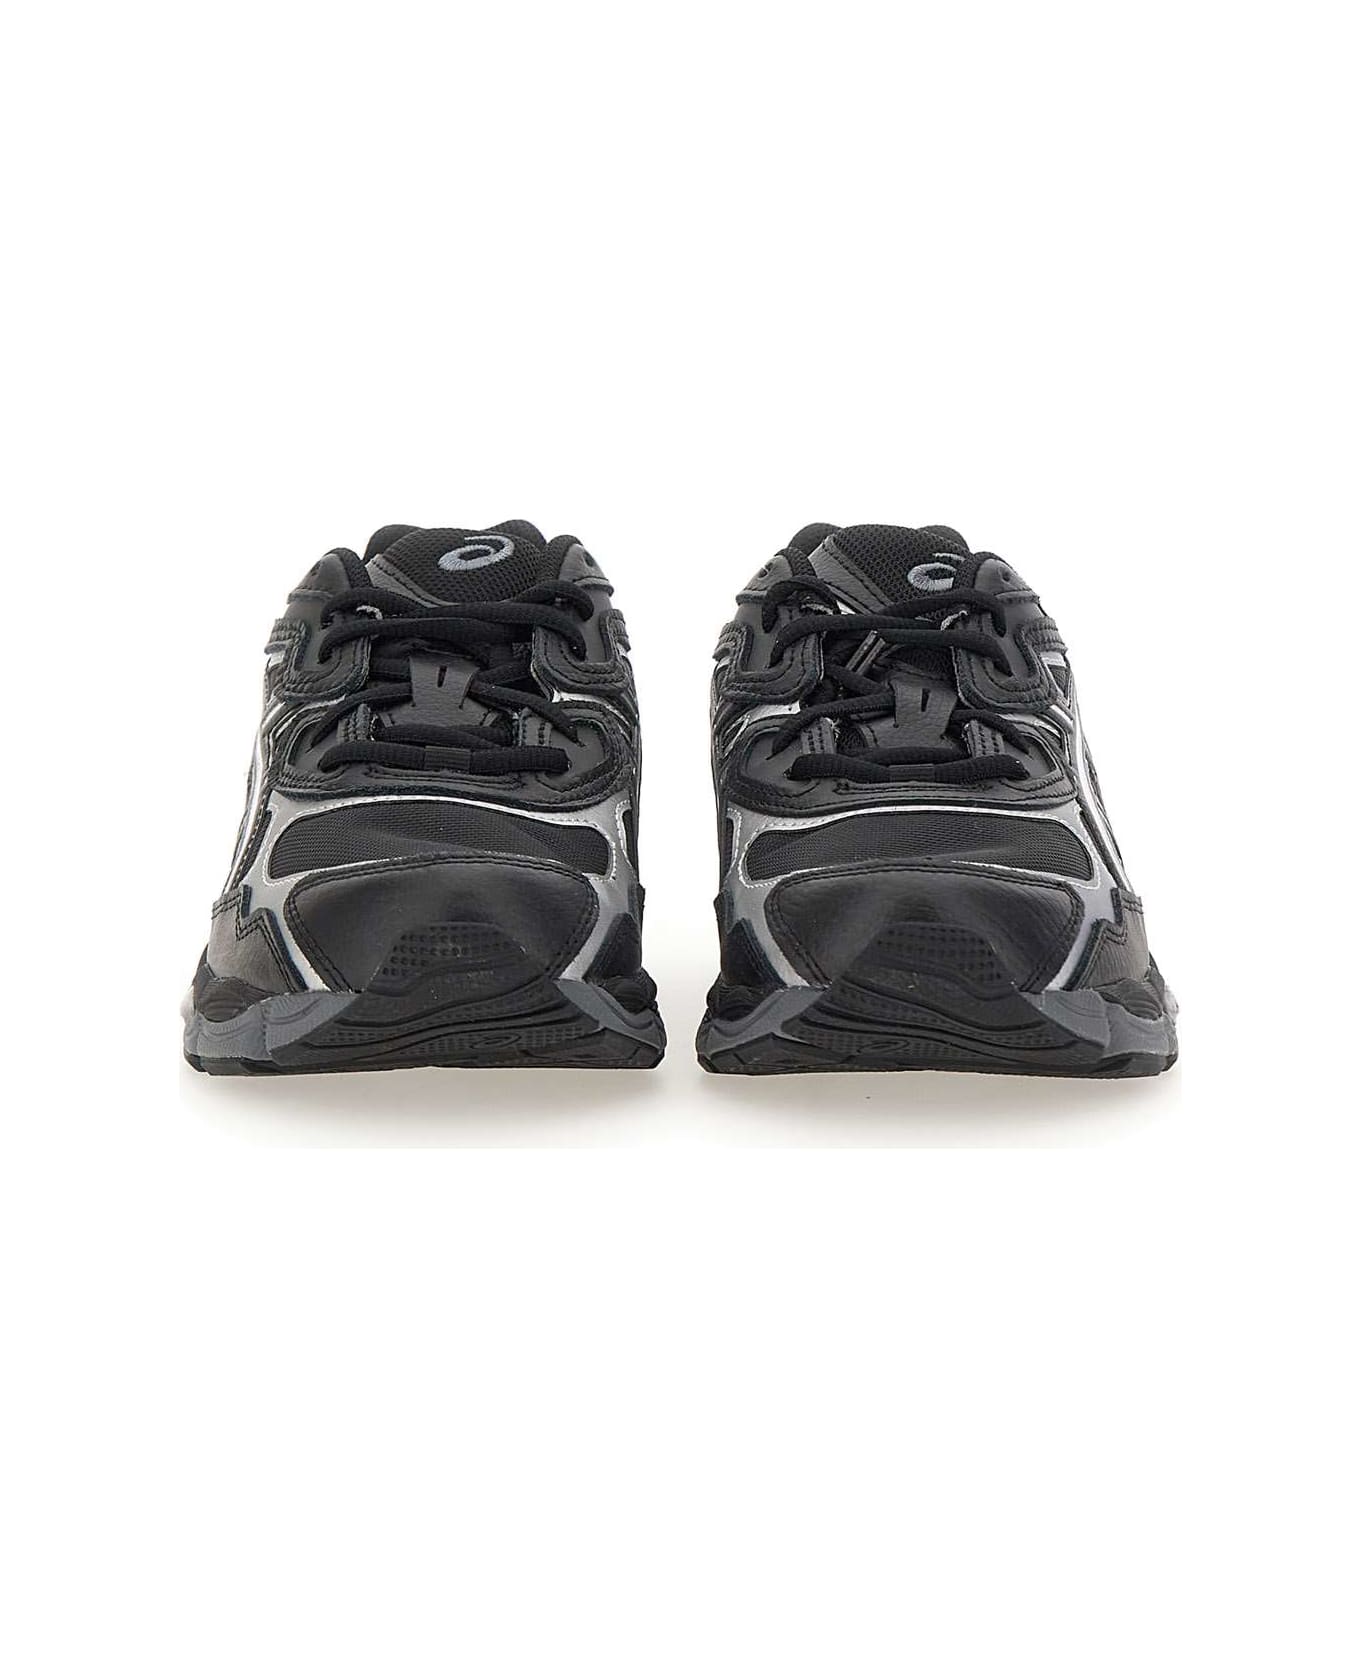 Asics "gel Nyc" Sneakers - BLACK/grey スニーカー